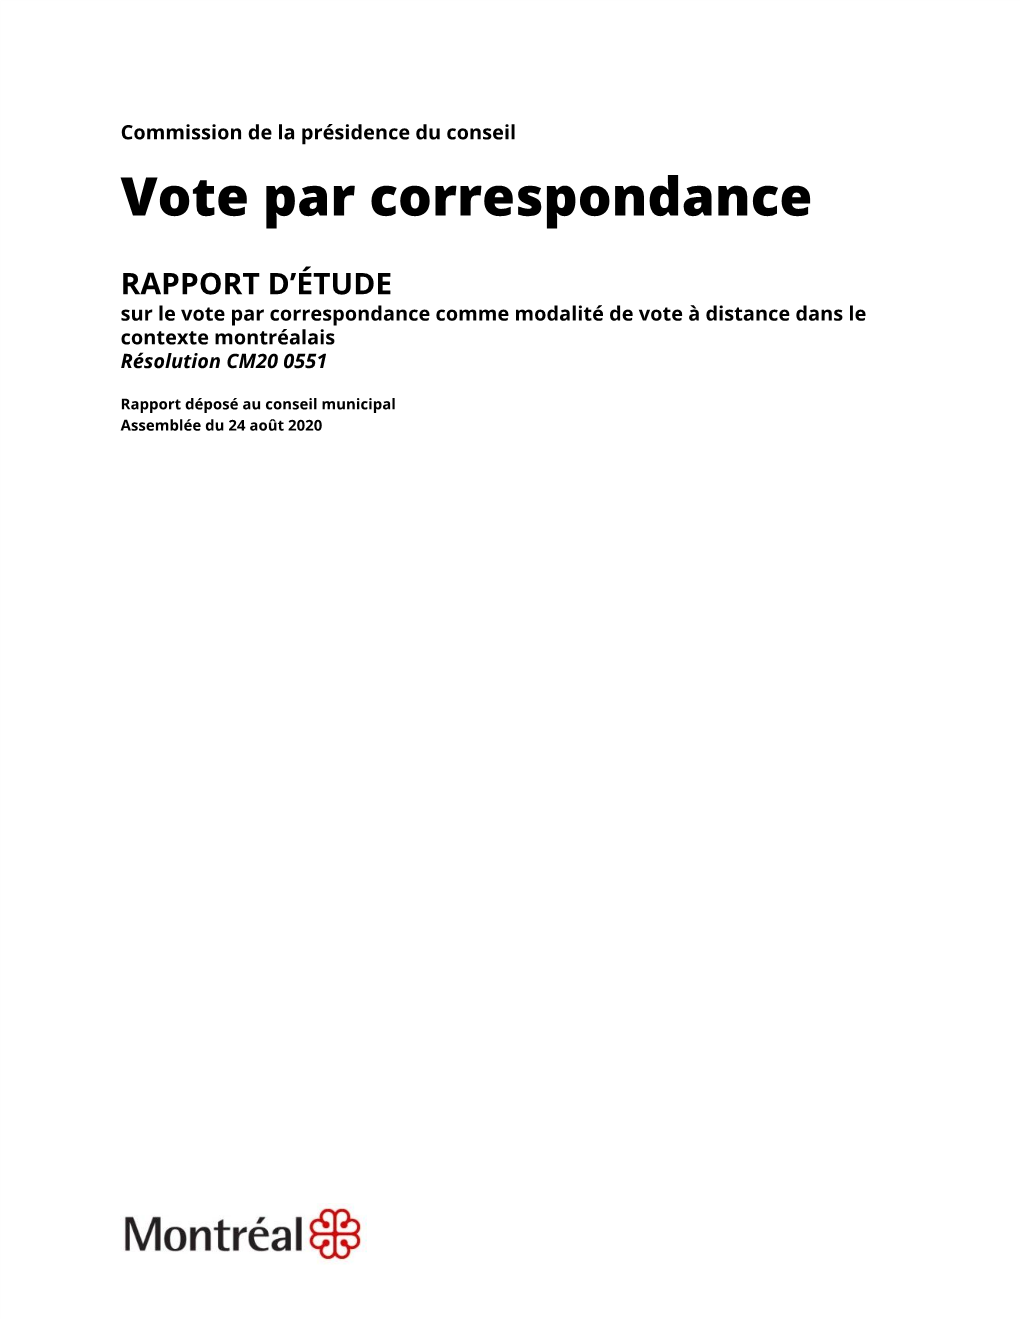 Vote Par Correspondance